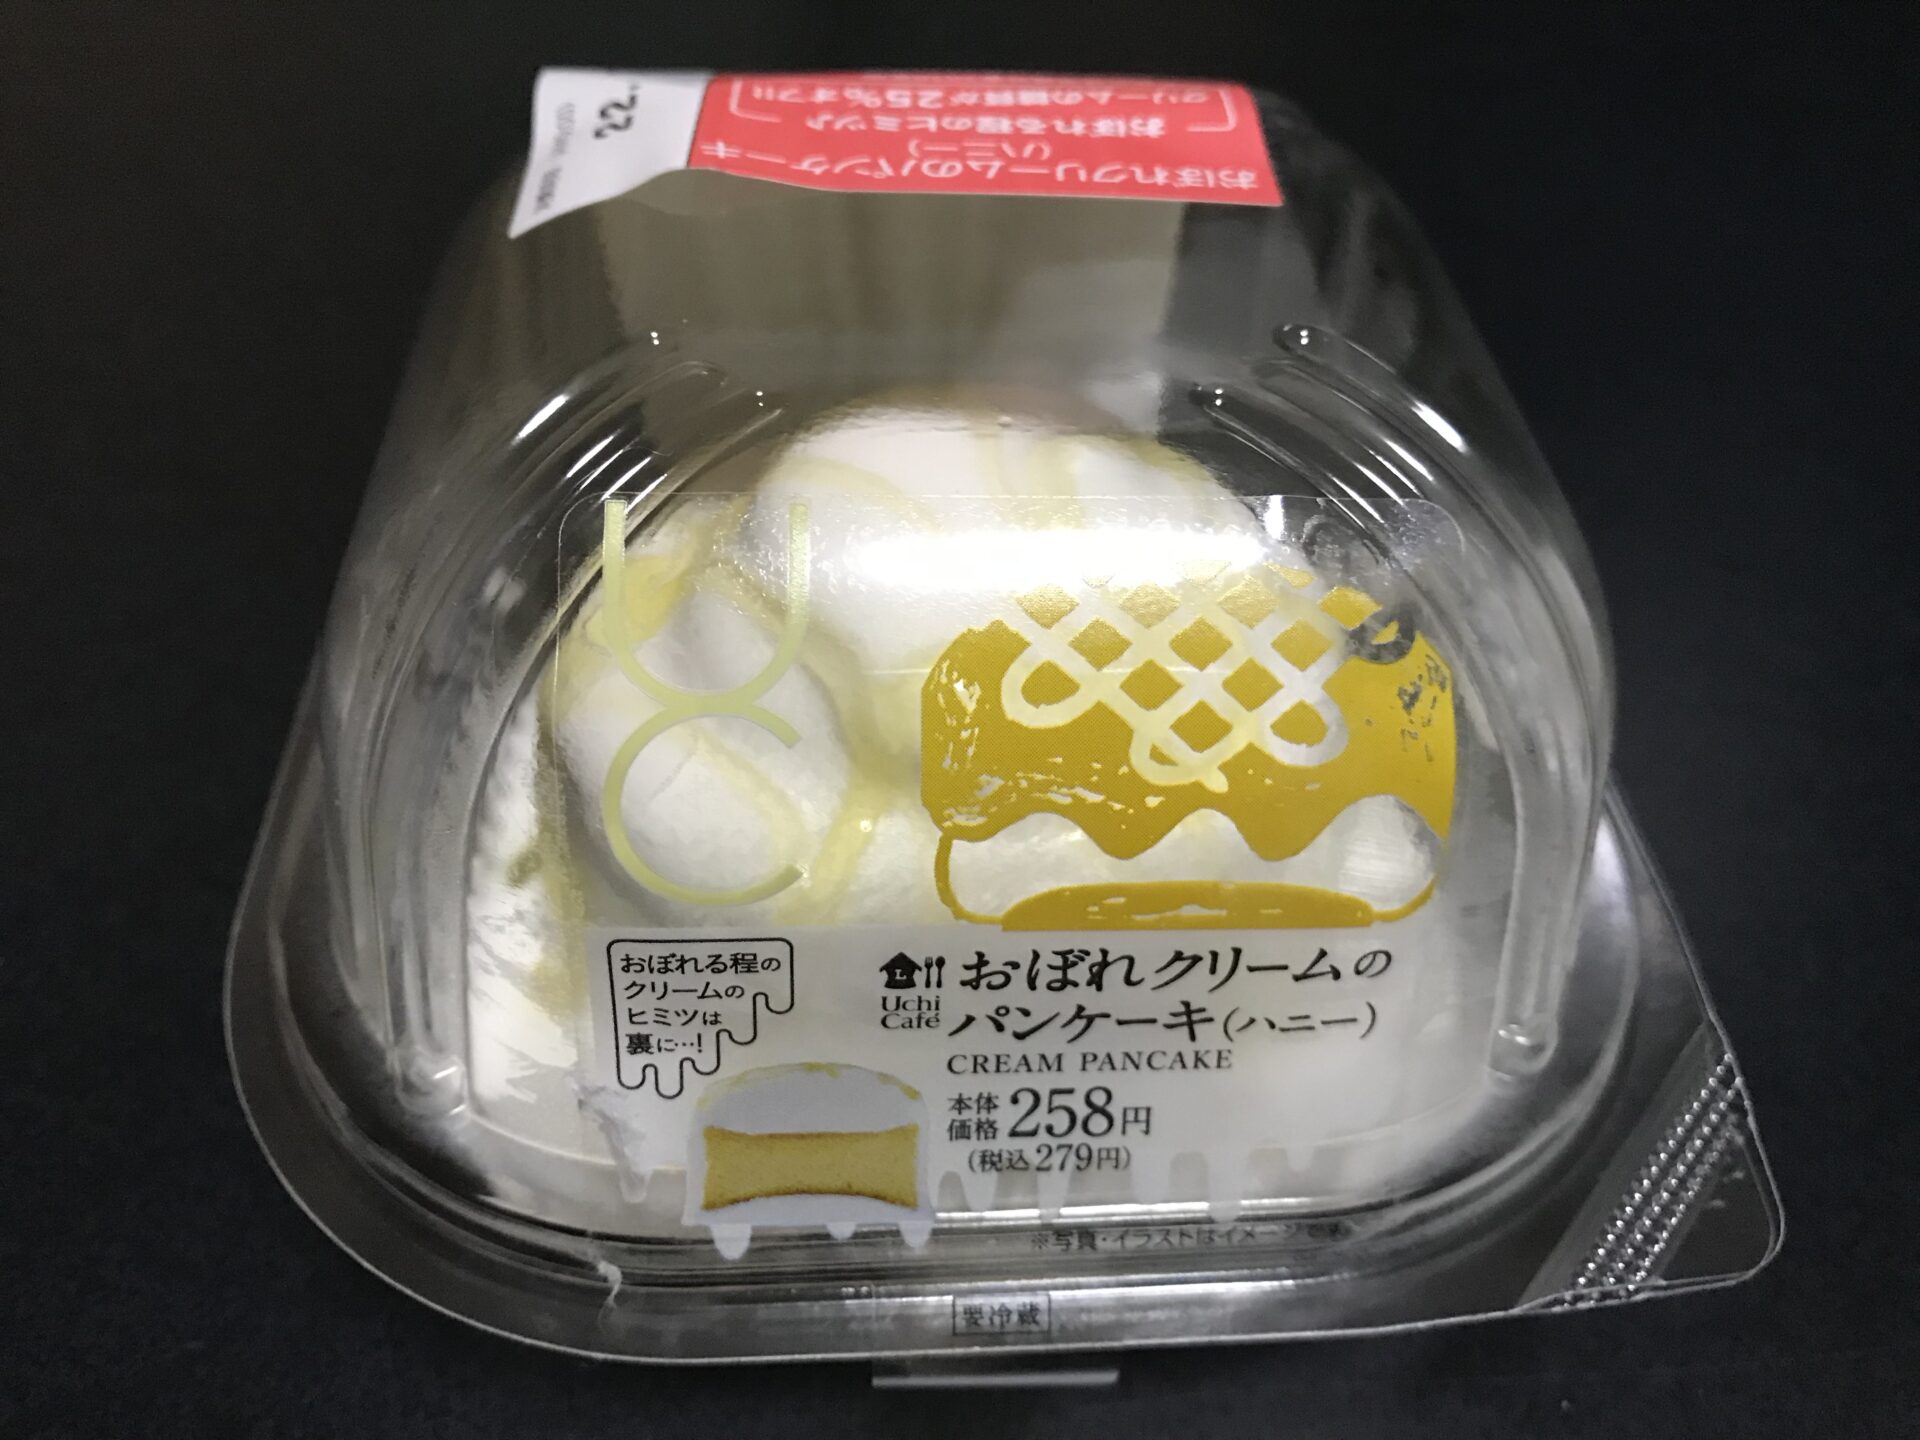 おぼれクリームのパンケーキ(ハニー)パッケージ